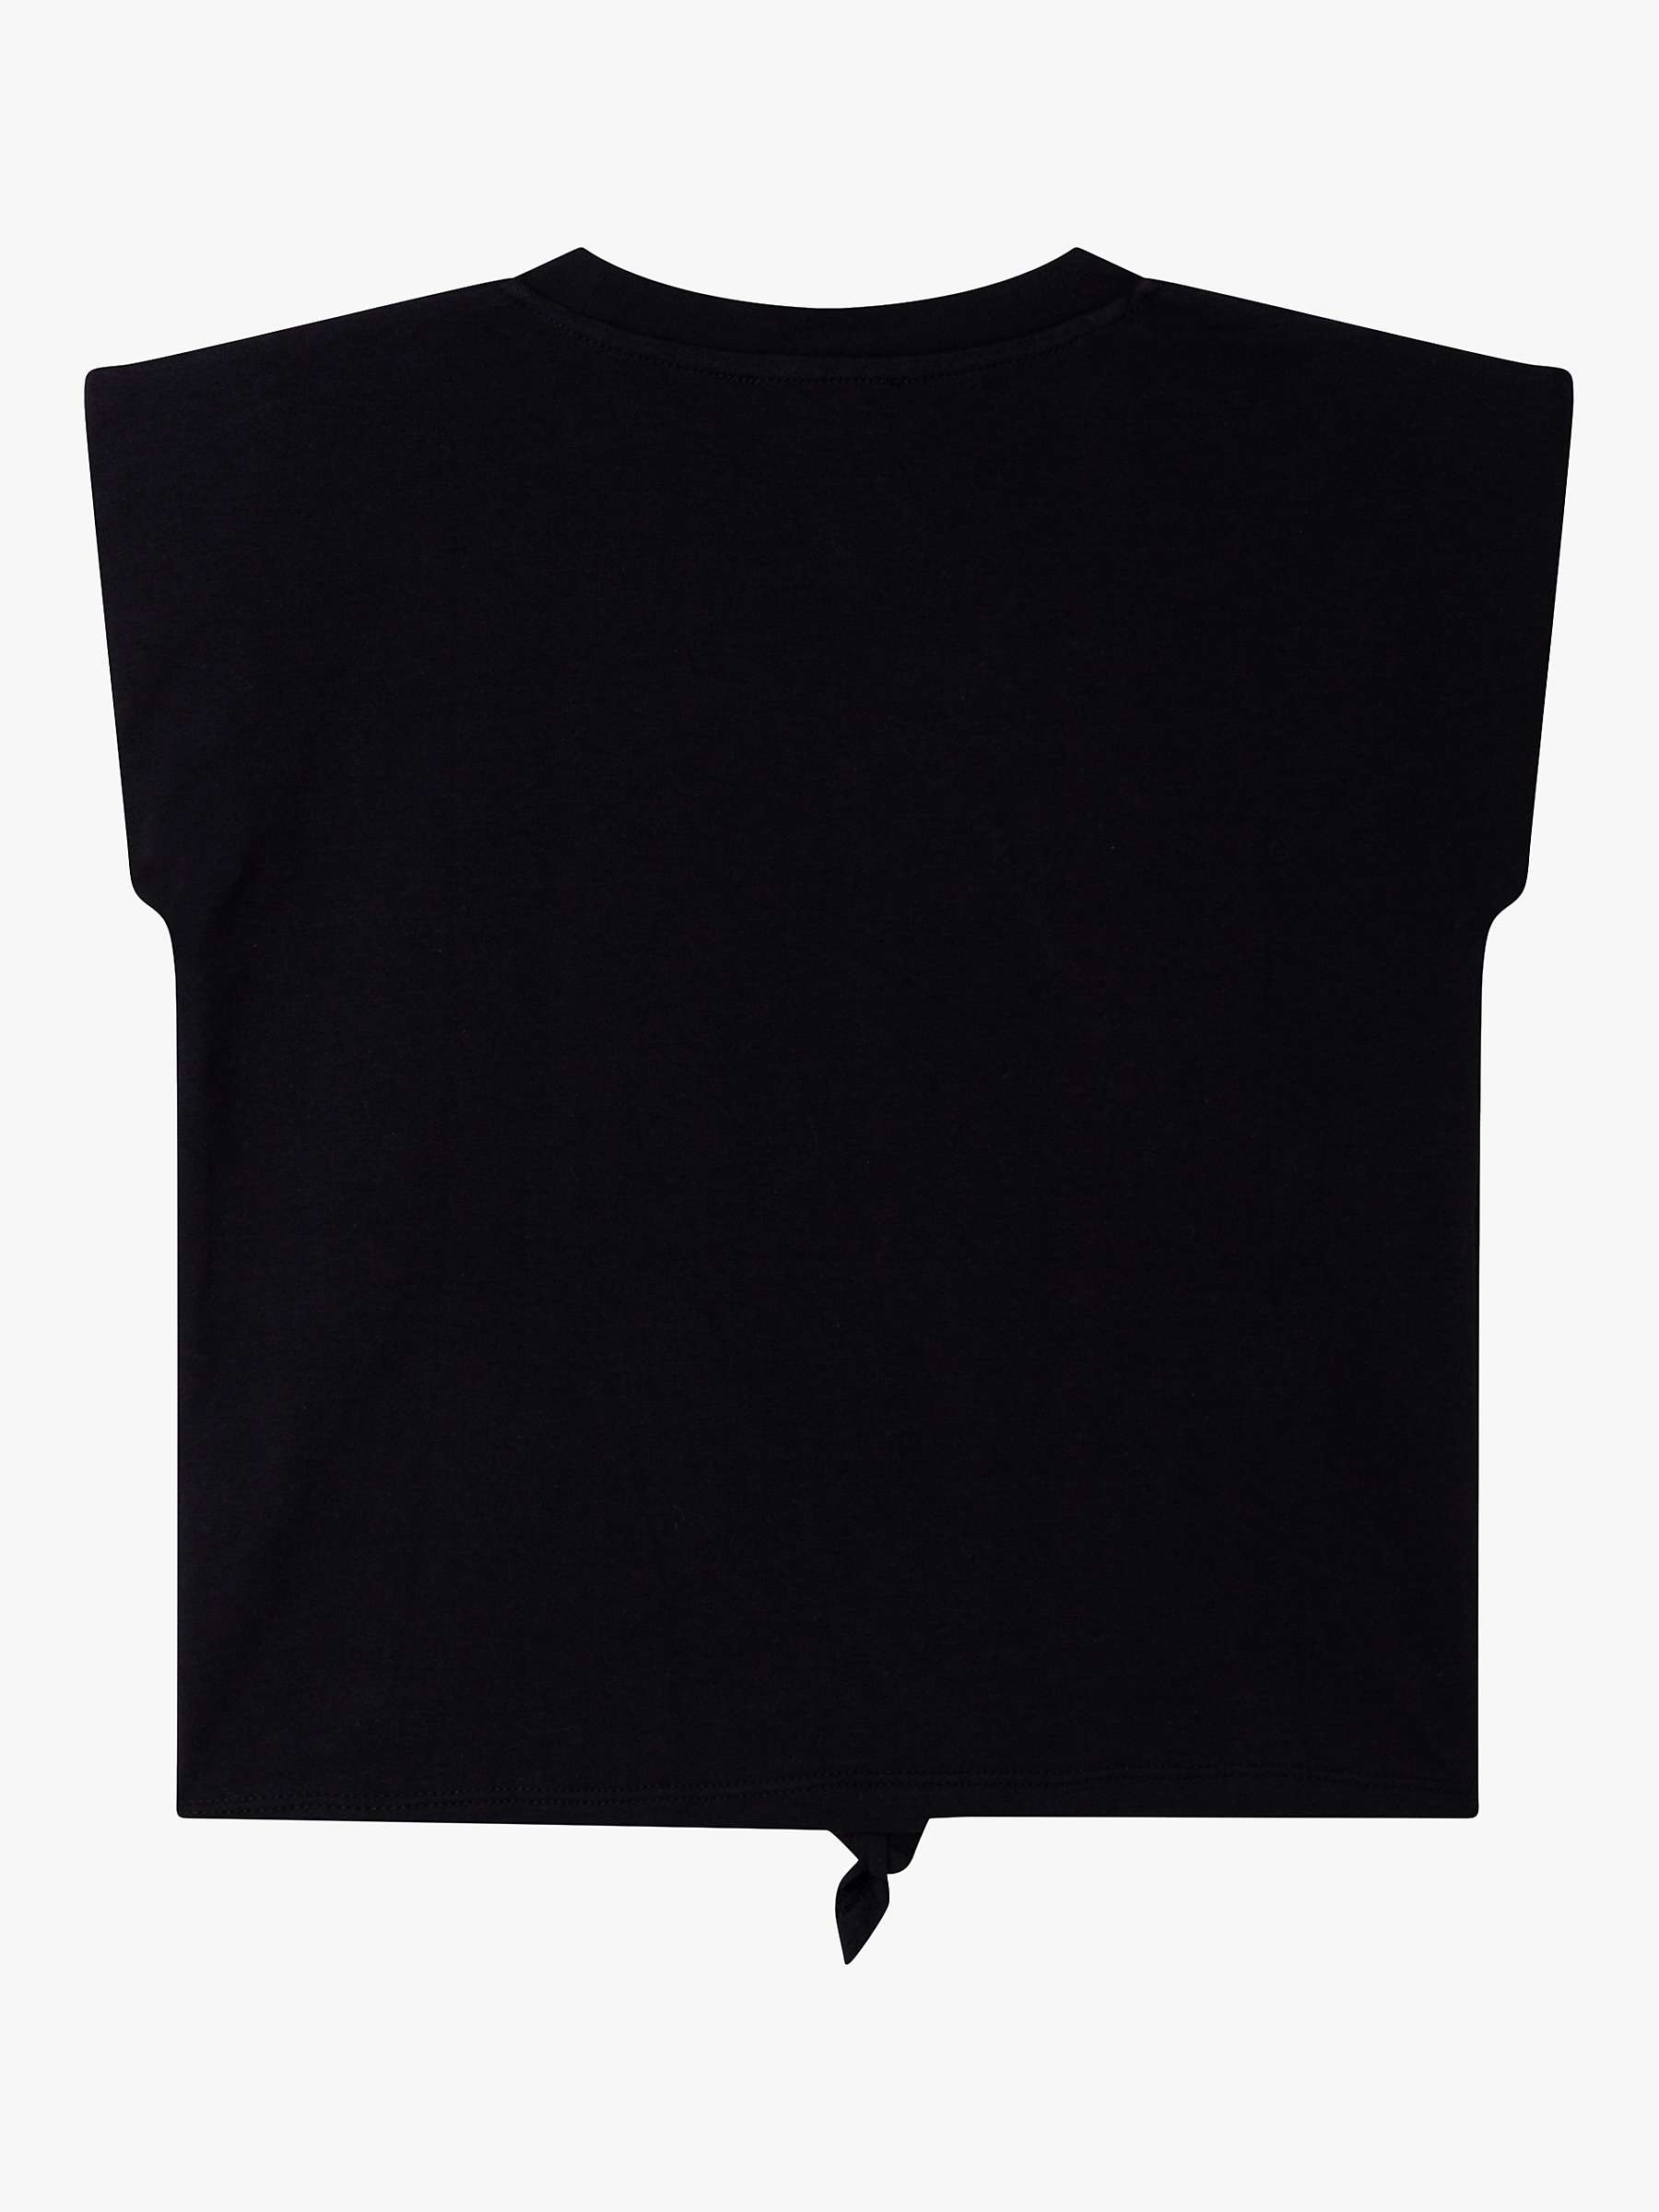 Buy DKNY Kids' Logo Front T-Shirt, Black Online at johnlewis.com